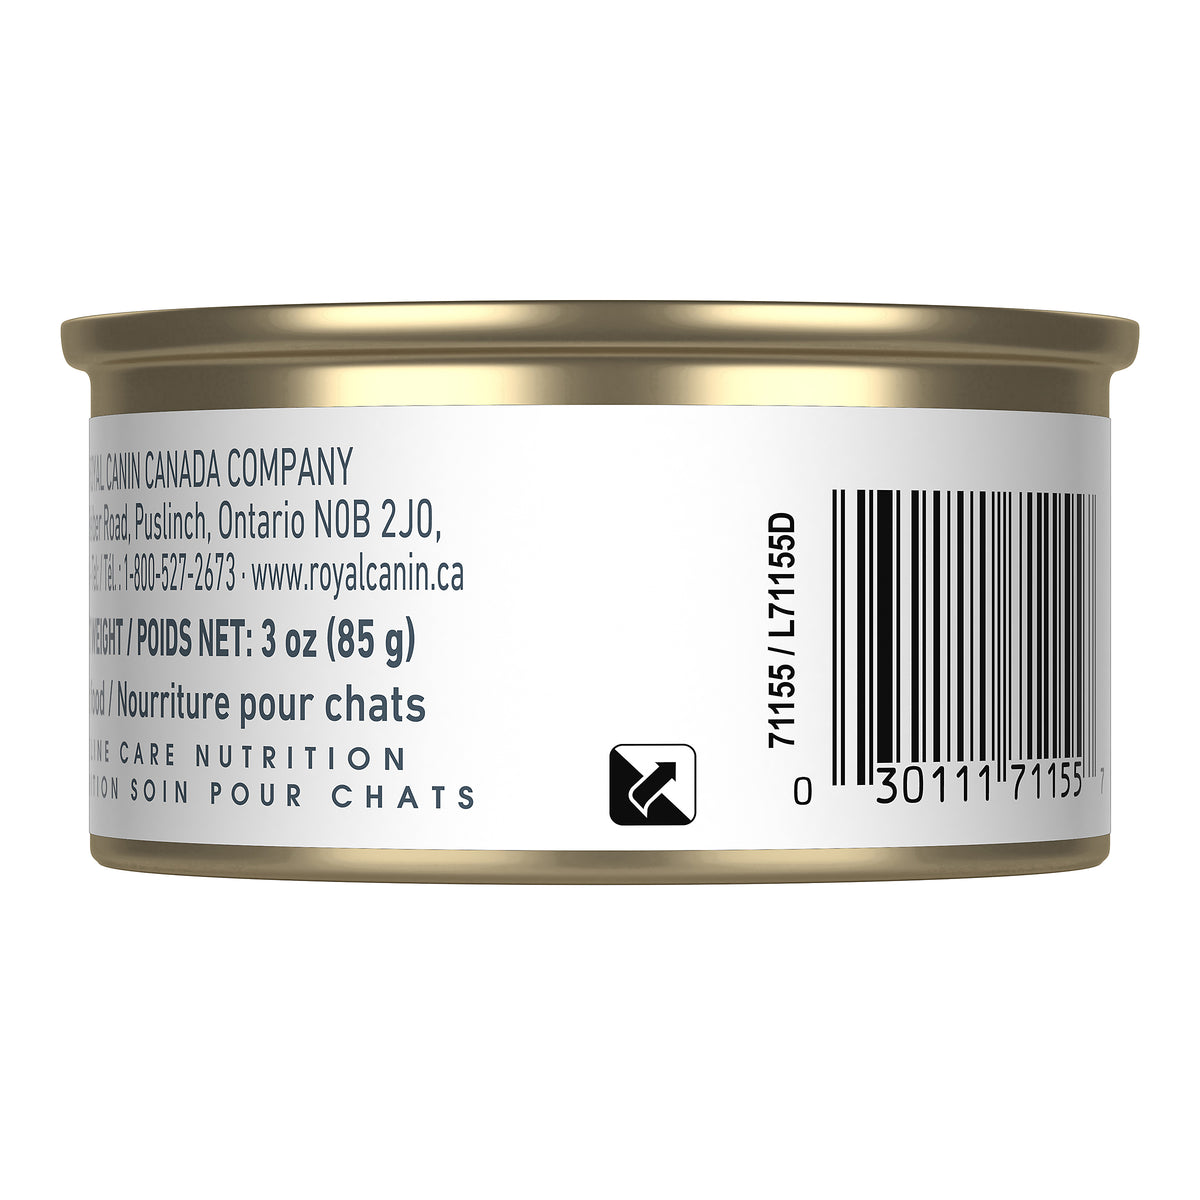 Royal Canin Digestion Sensible (Pâté en sauce) - Nourriture en conserve pour chat